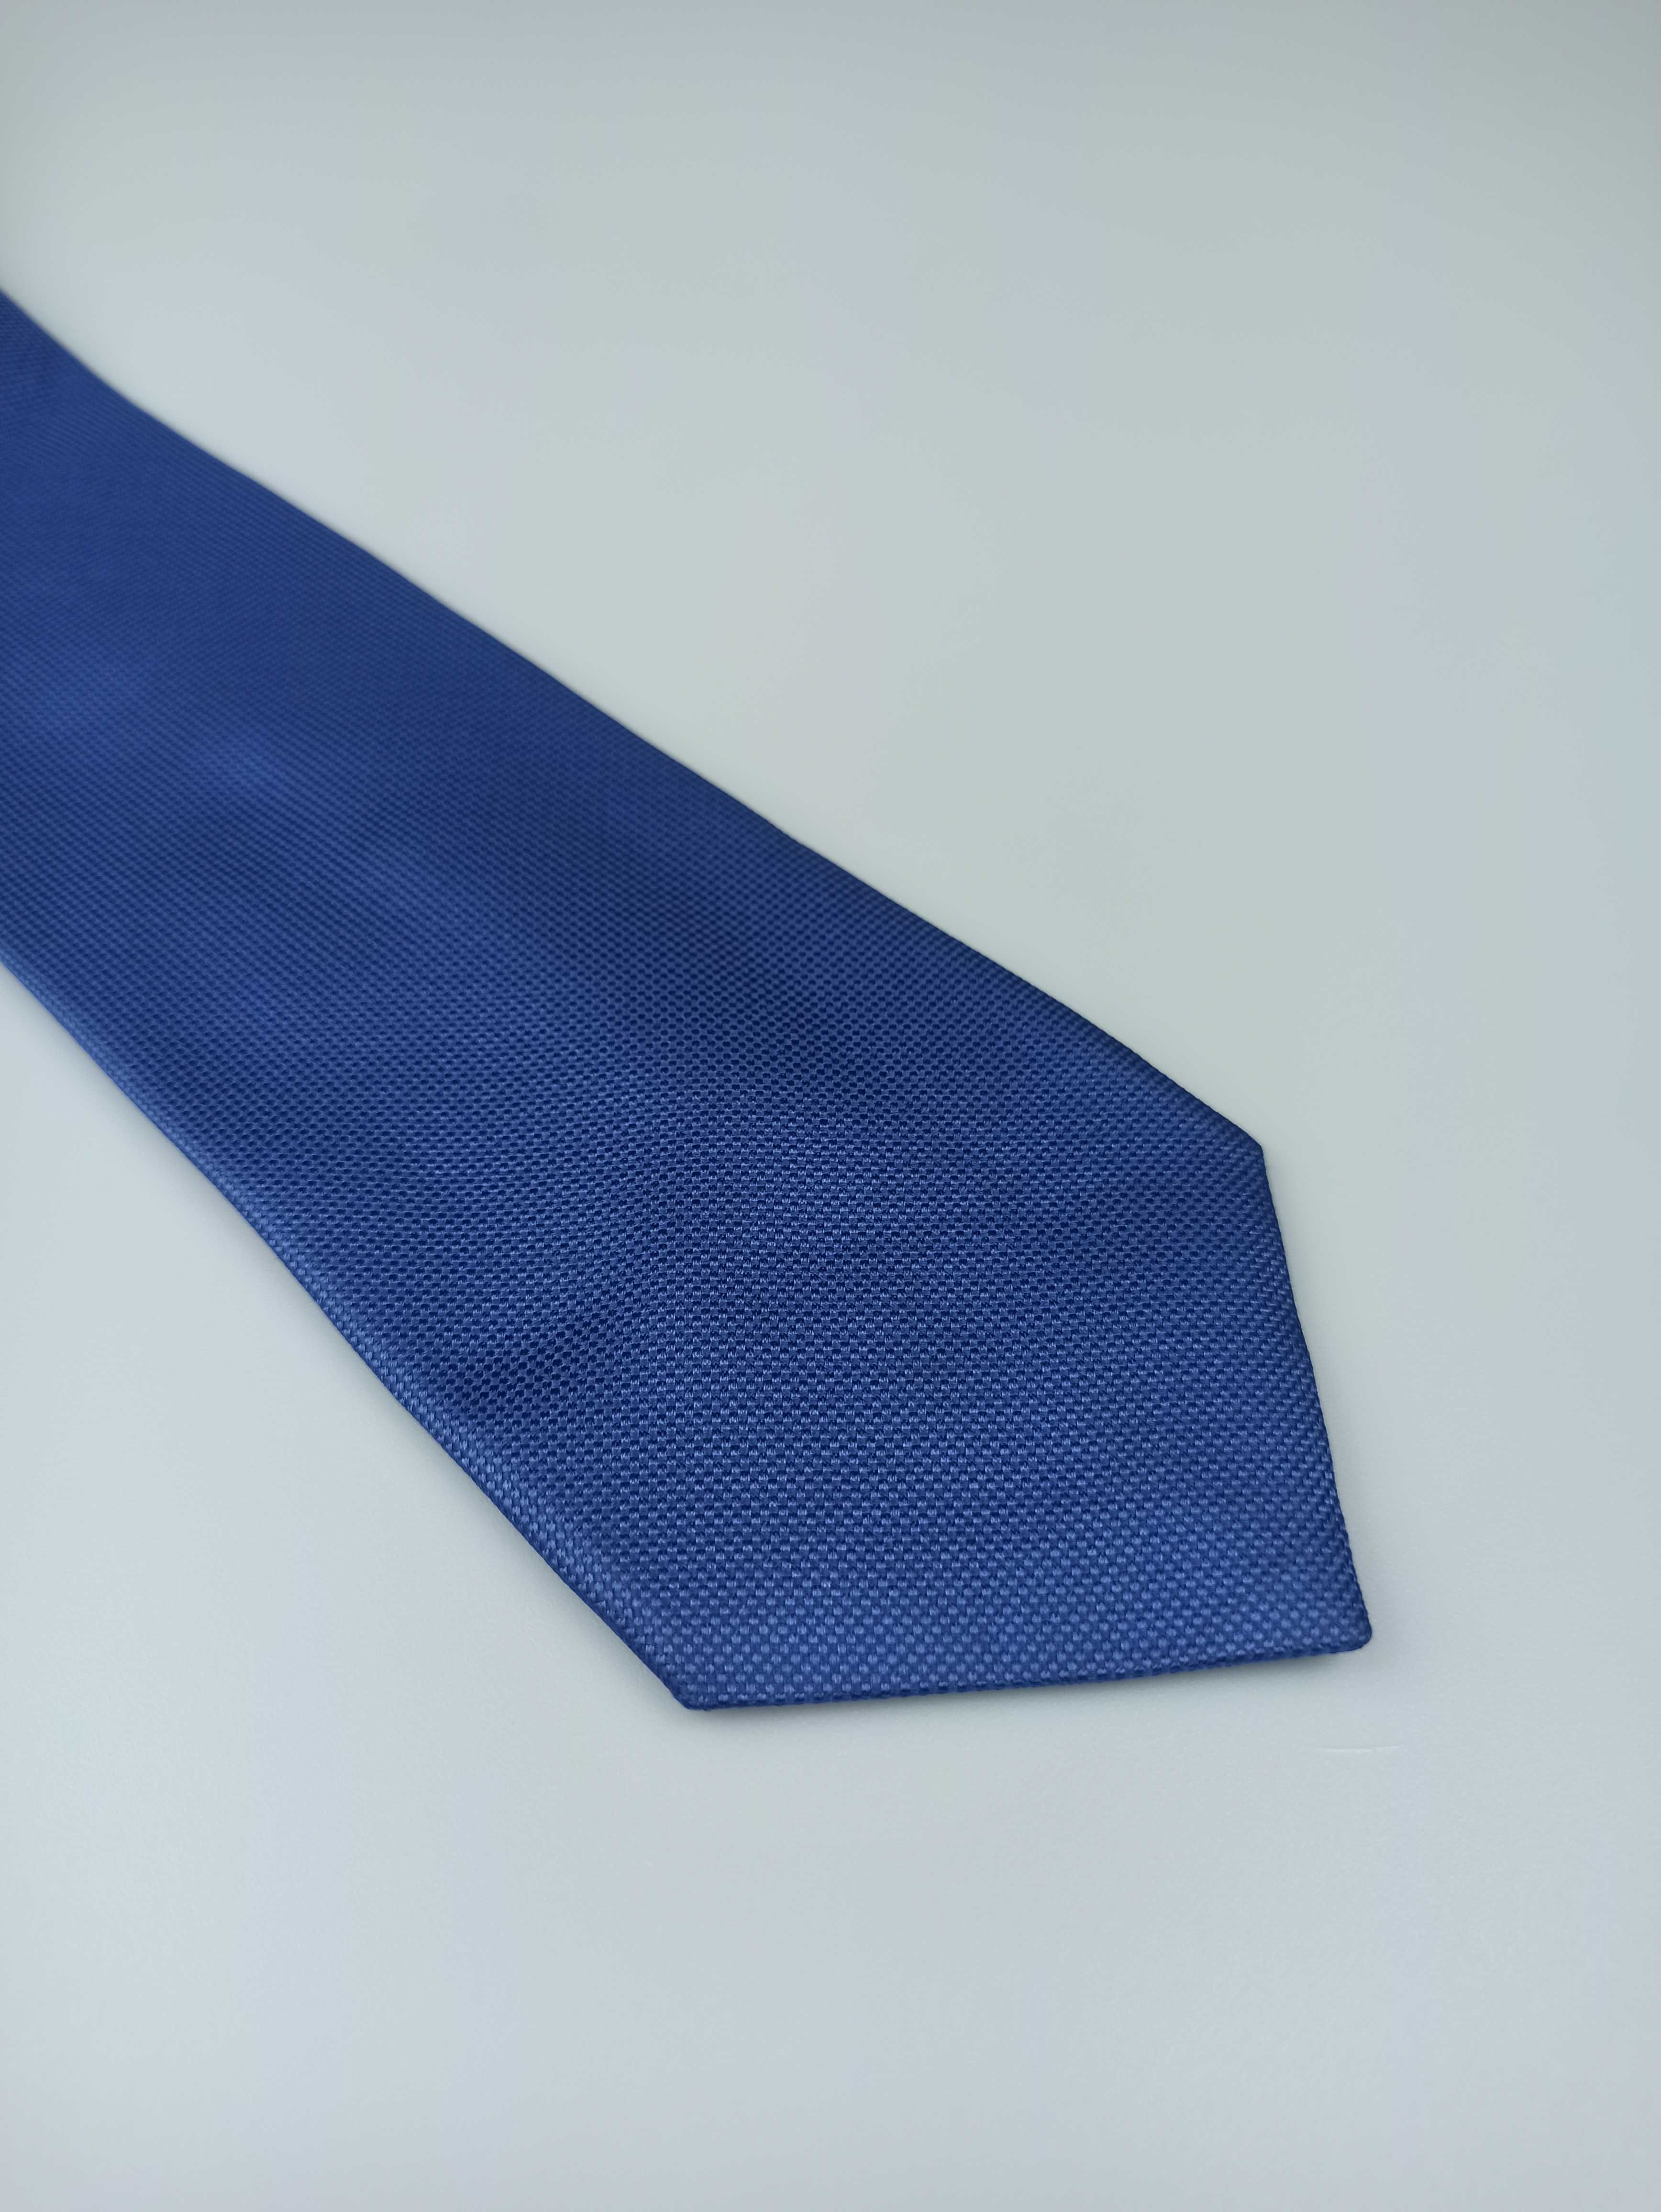 TM Lewin niebieski jedwabny krawat gładki wa45